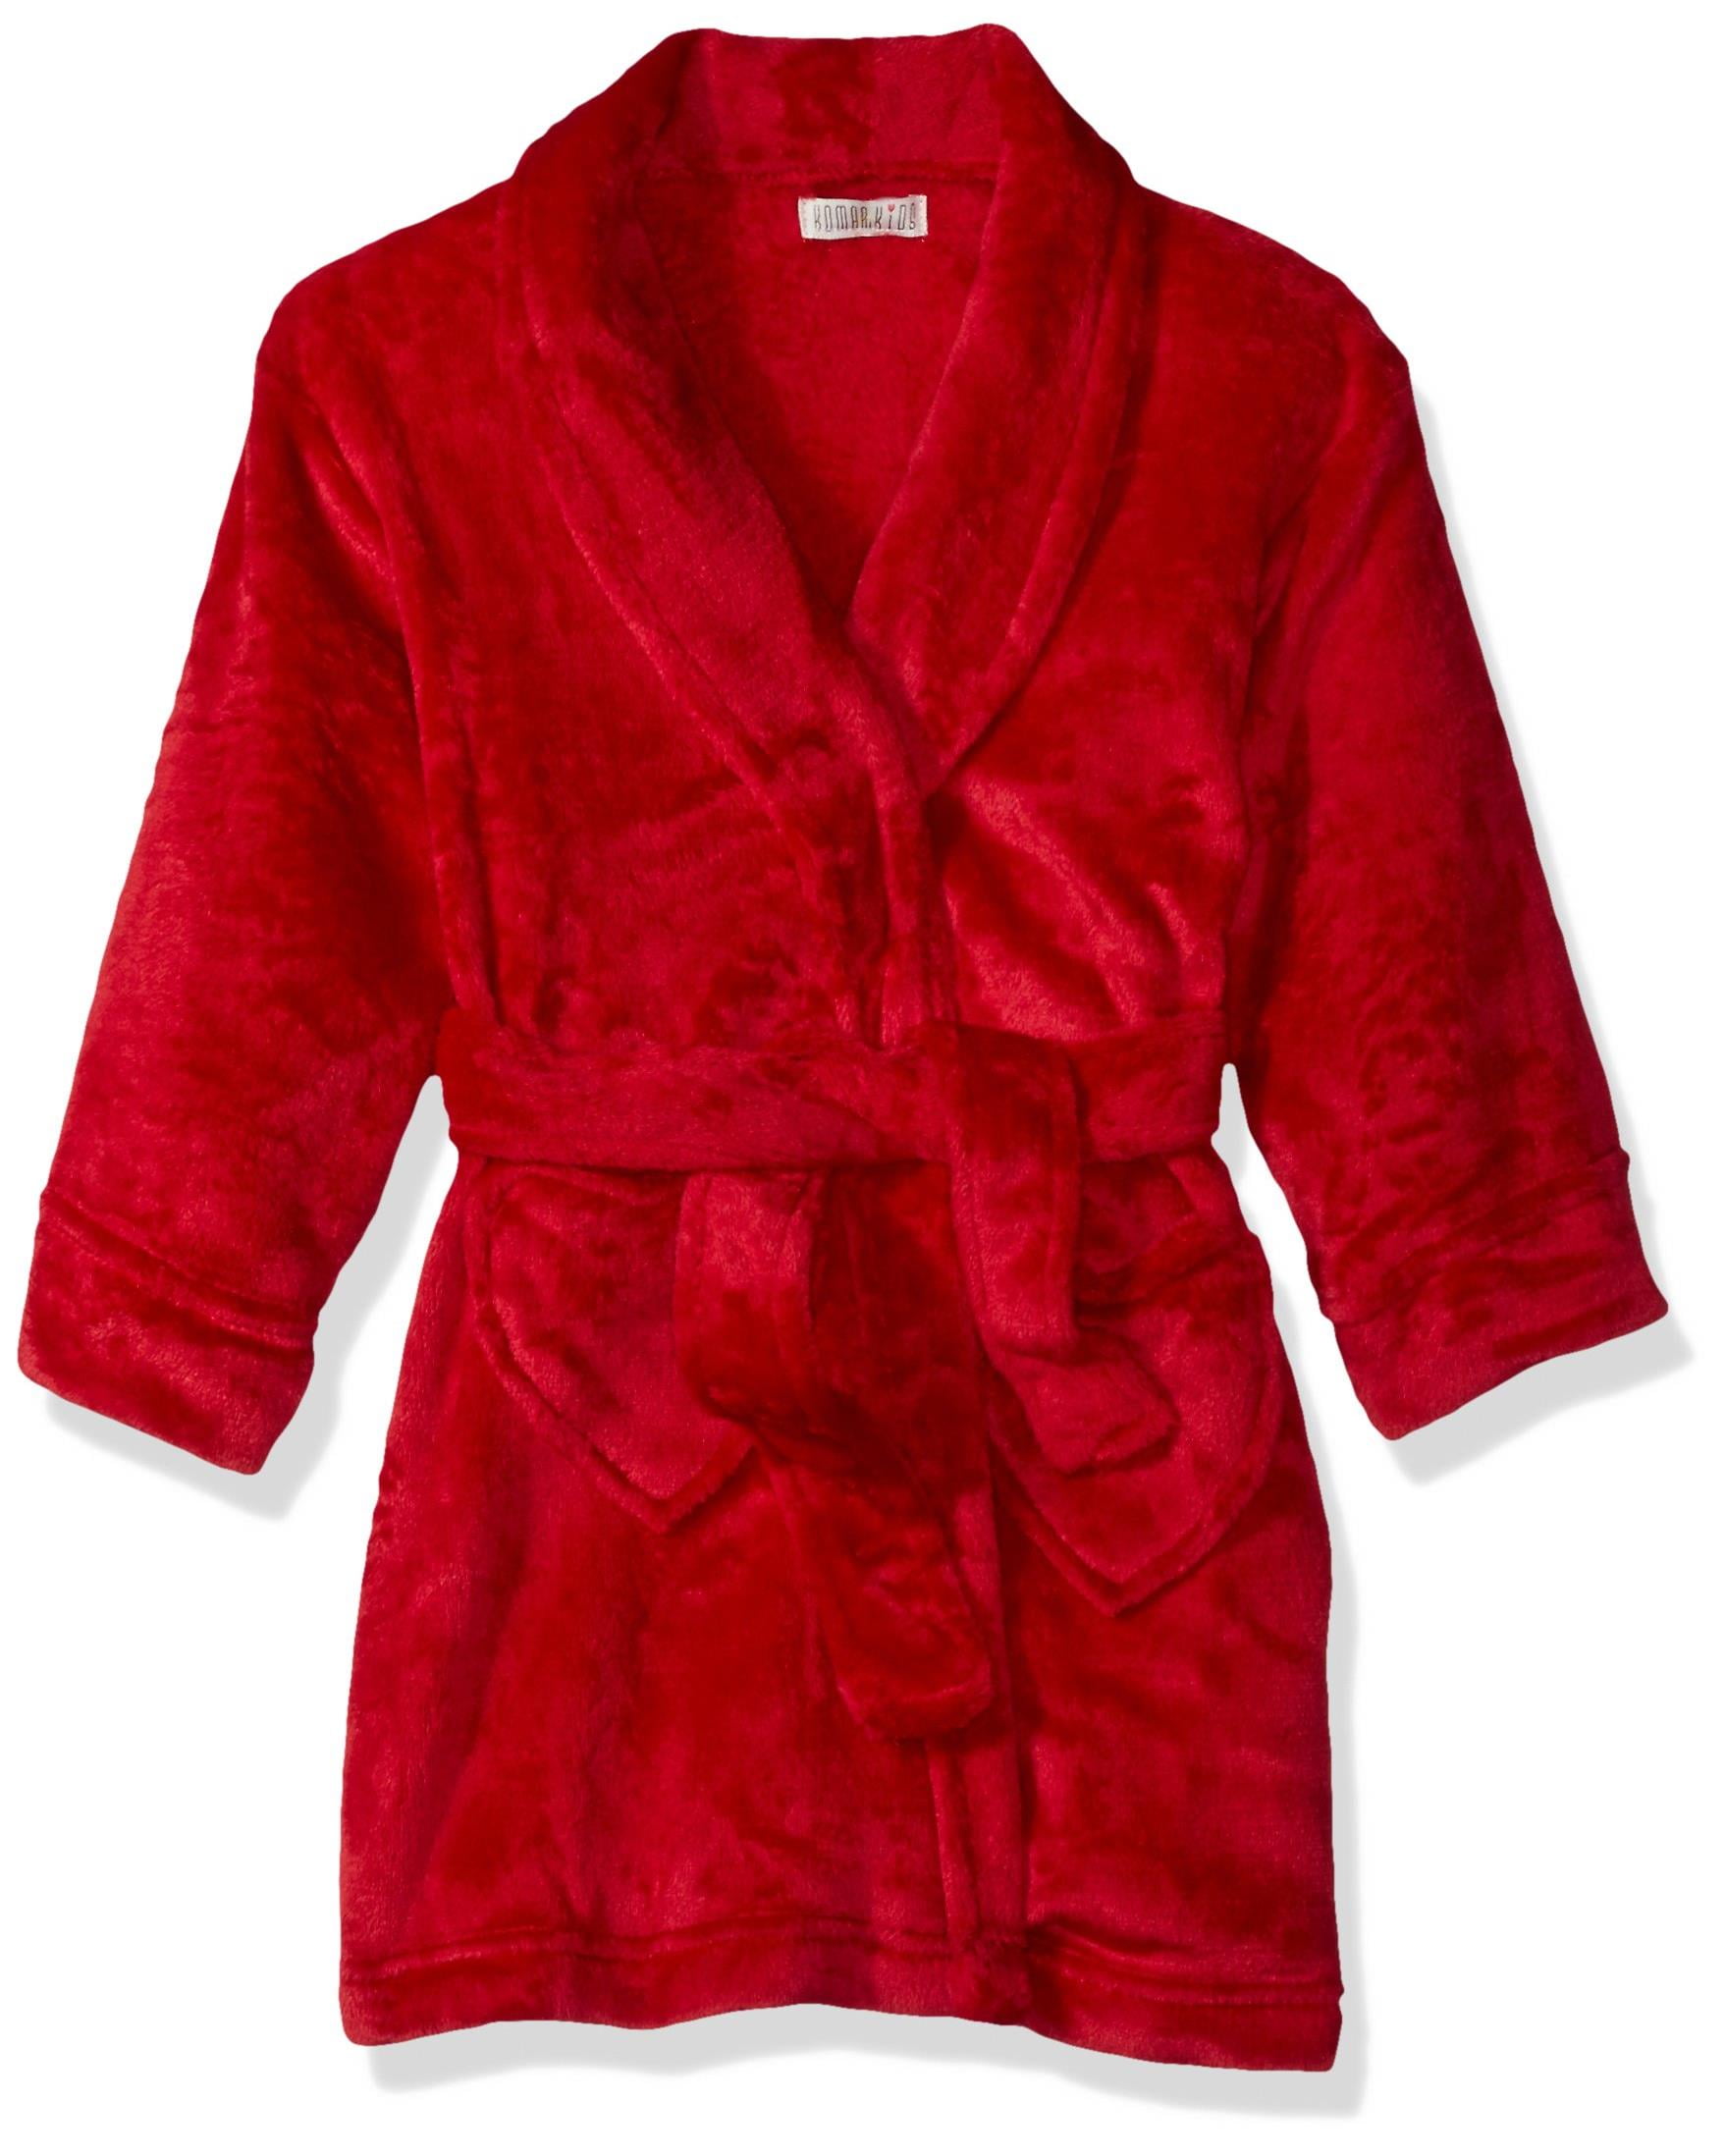 Komar Kids - Komar Kids Girls Bathrobe Plush Pajama Robe Loungewear ...